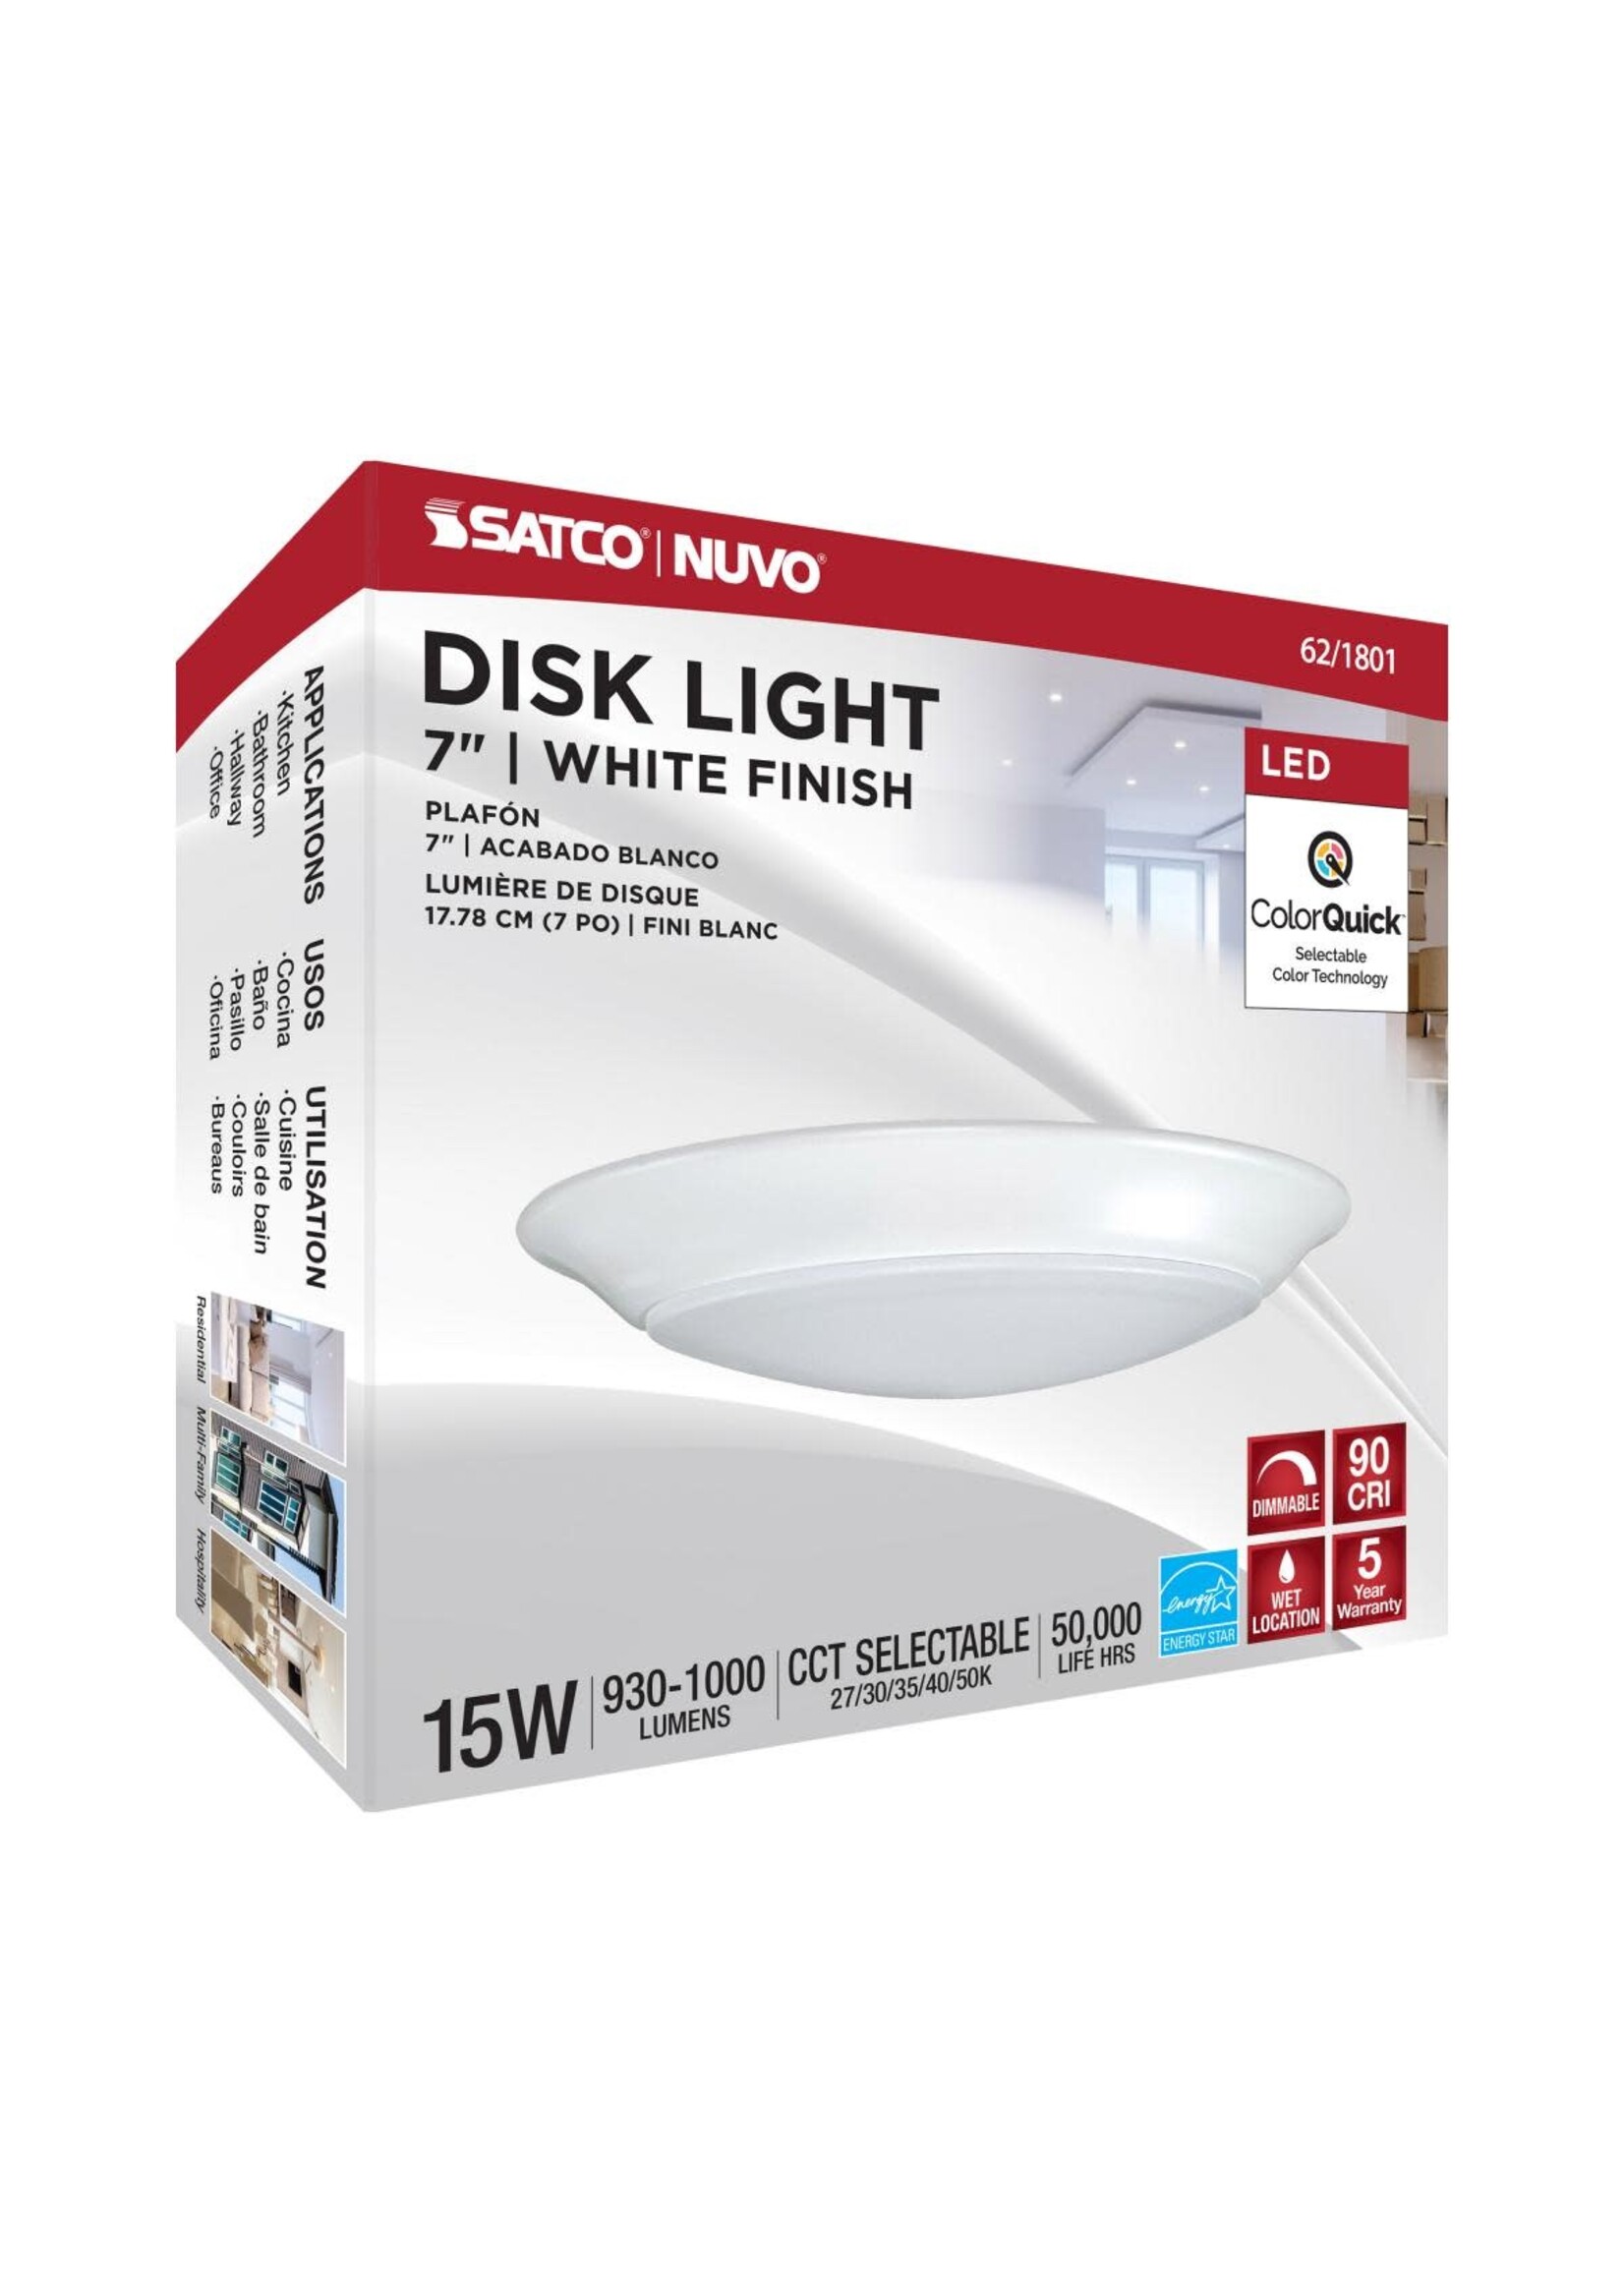 SATCO 62-1801 7" LED DISK LIGHT WHHITE